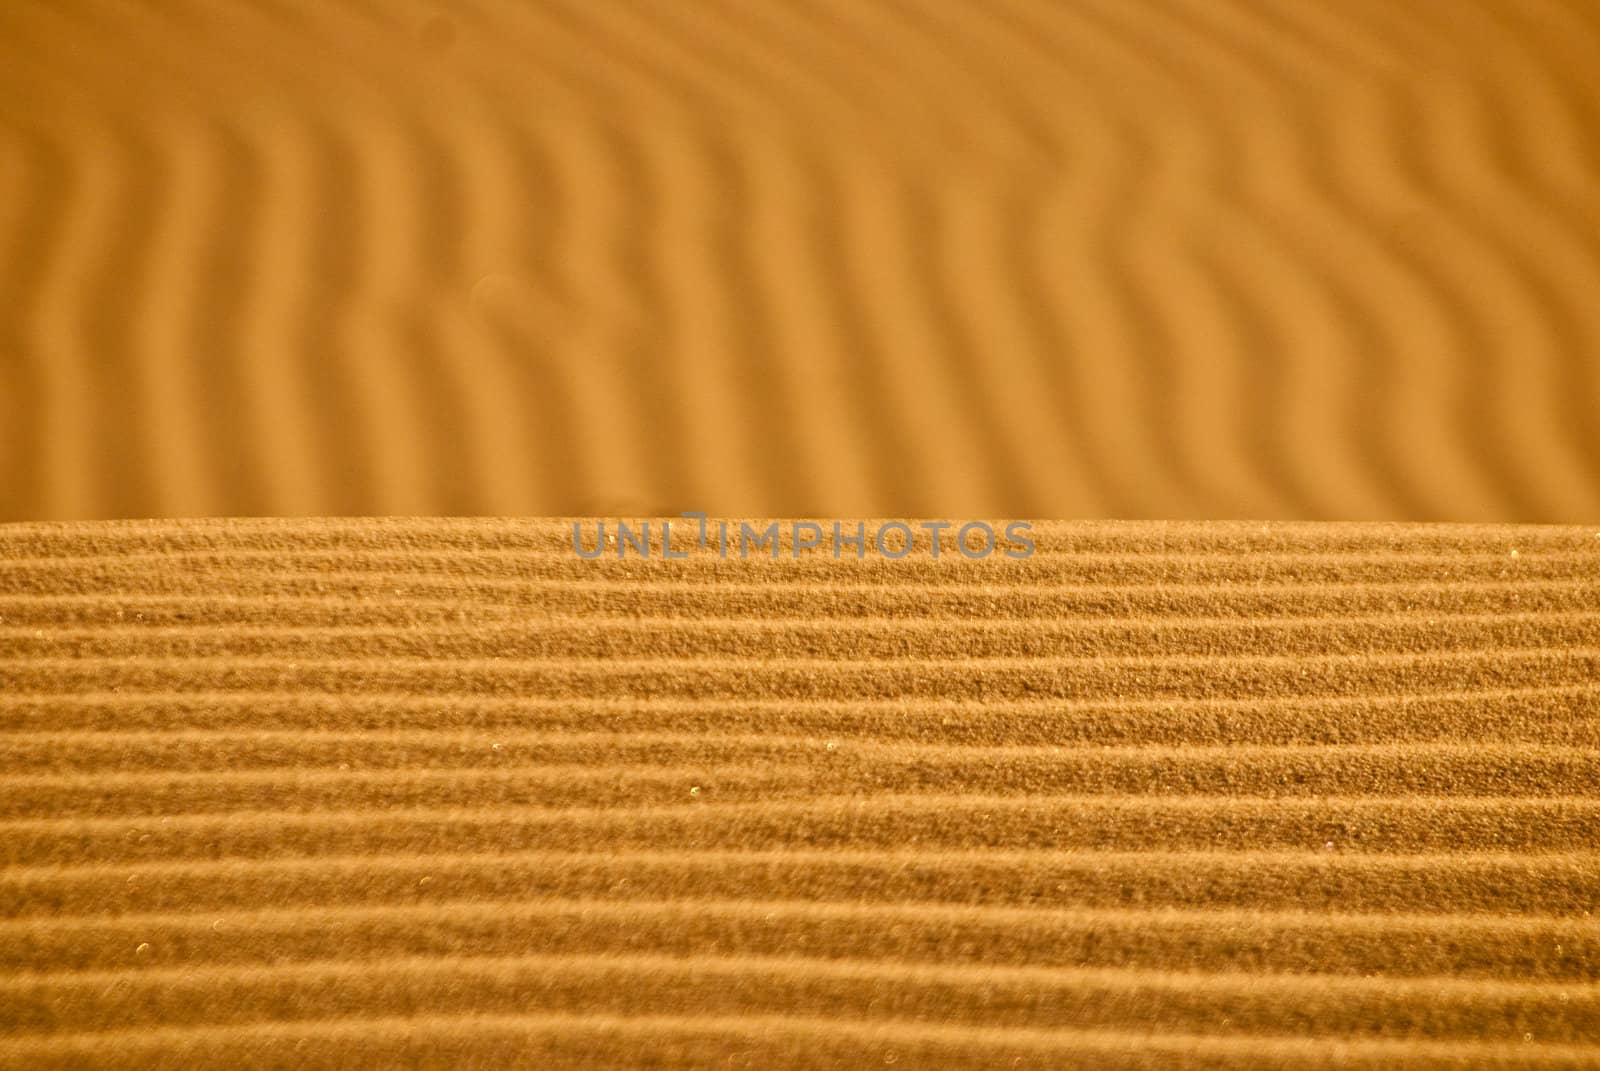 Sand Horizon 2 by emattil